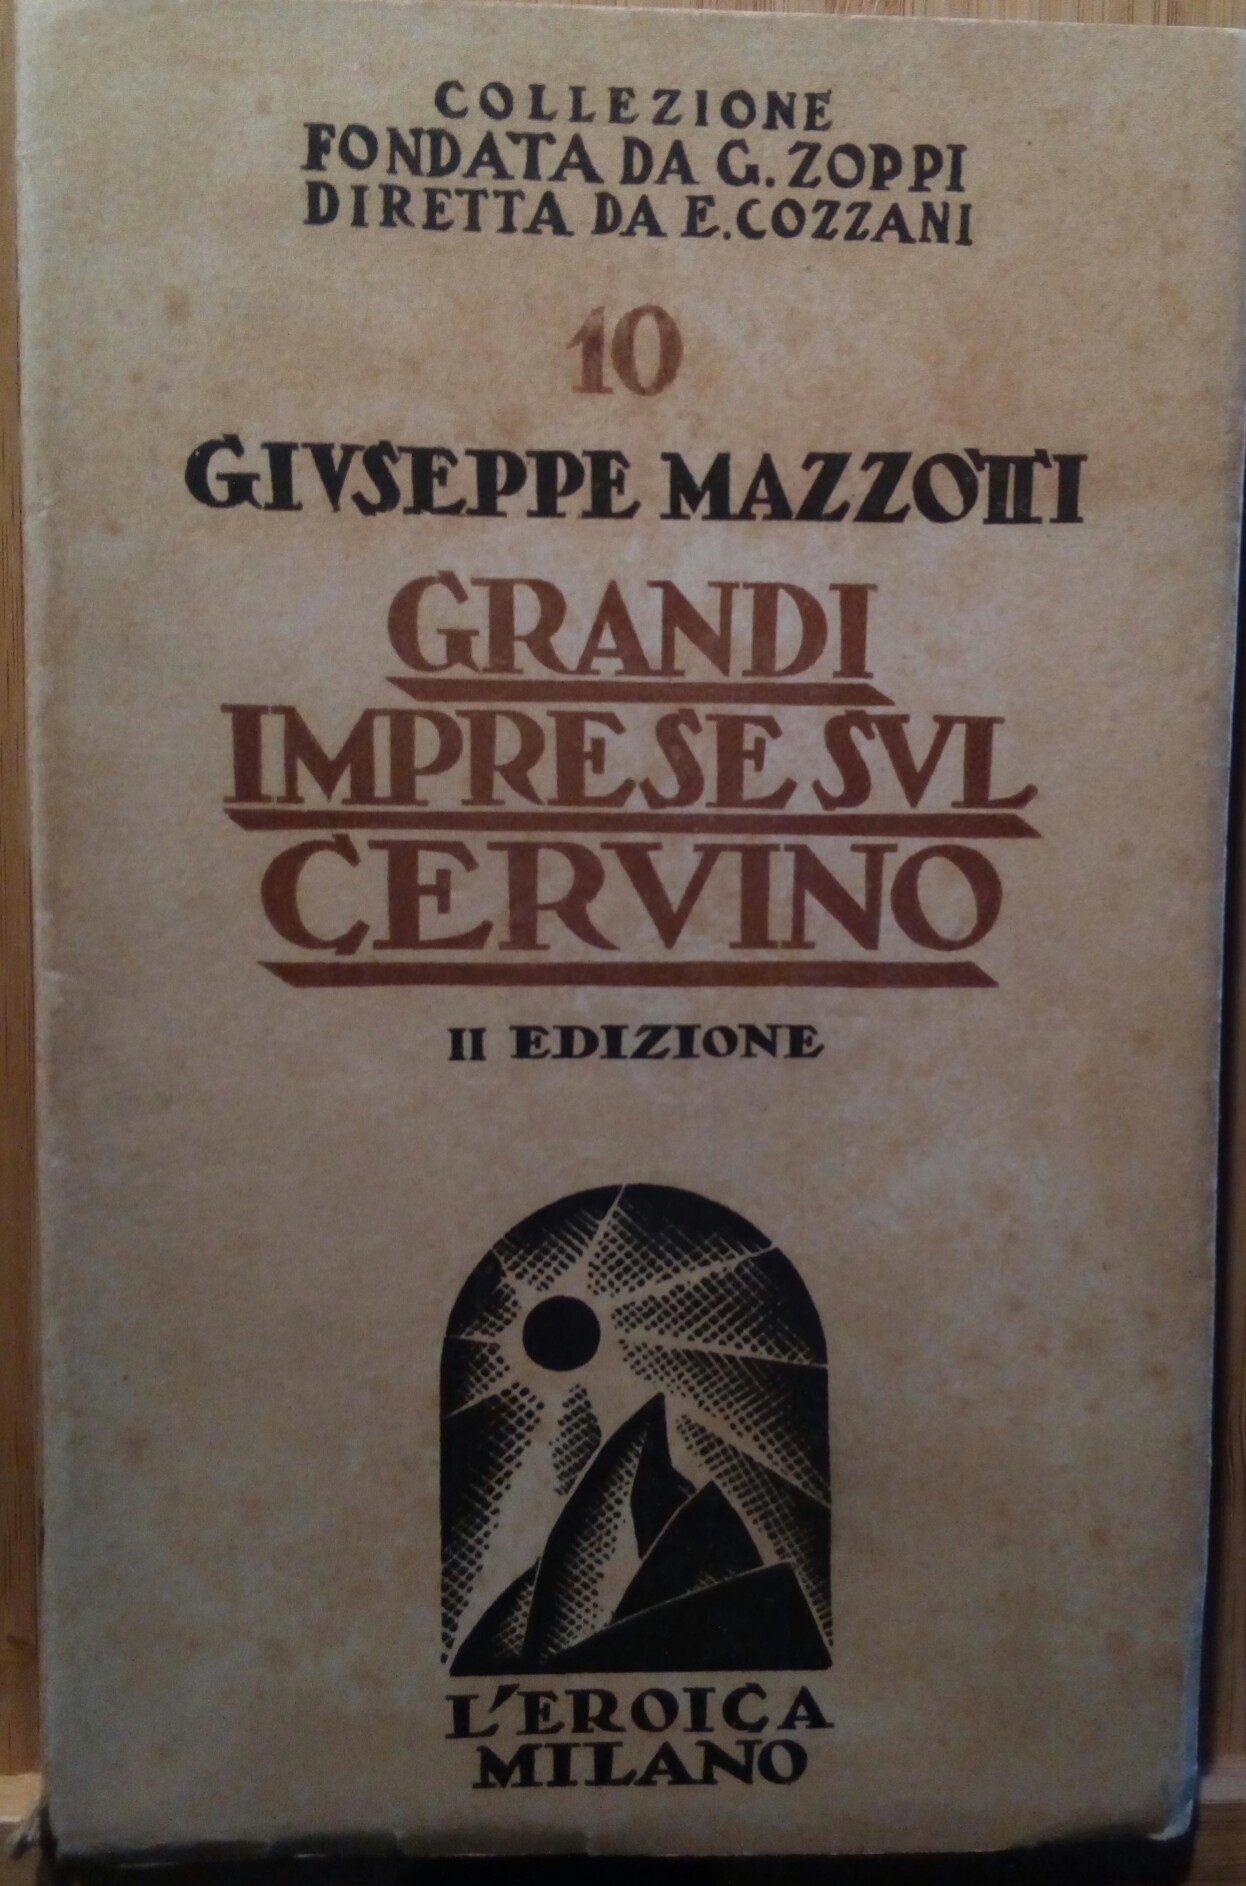 Mazzotti " Grandi imprese sul Cervino" L'Eroica Milano 1944